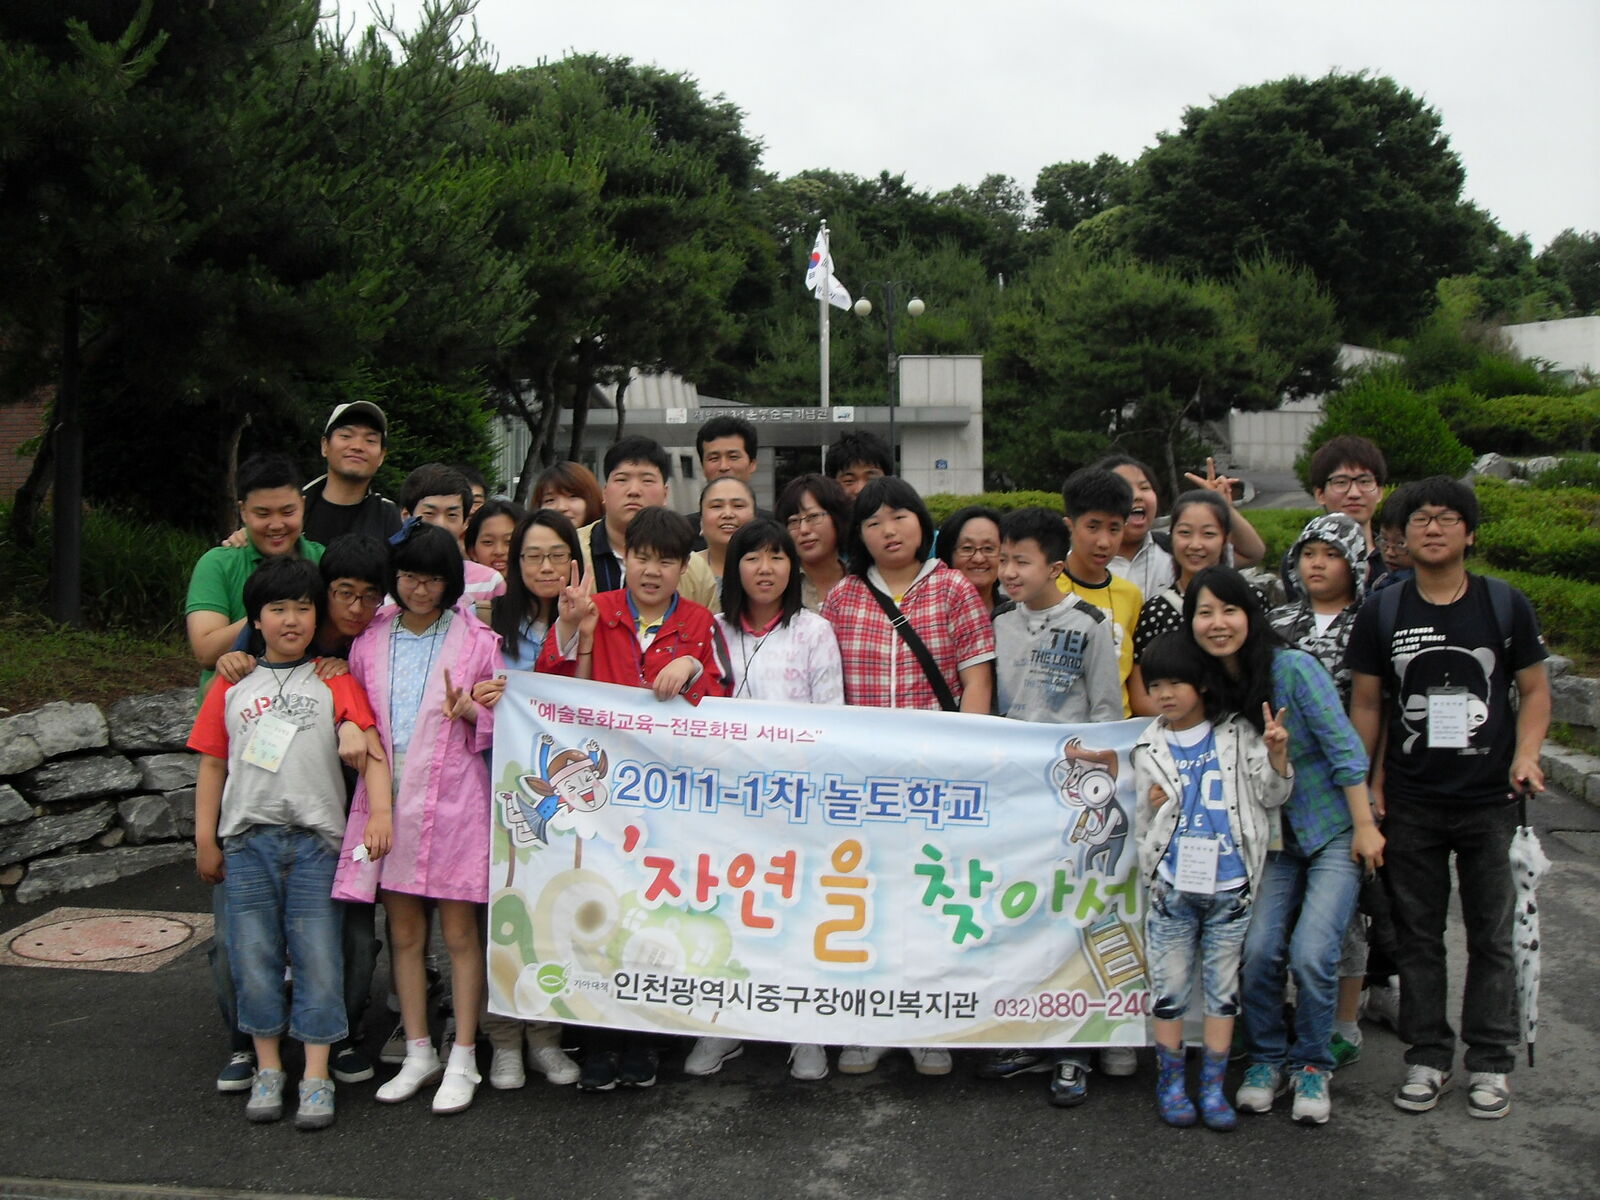 2011-1차 놀토학교 6회 진행